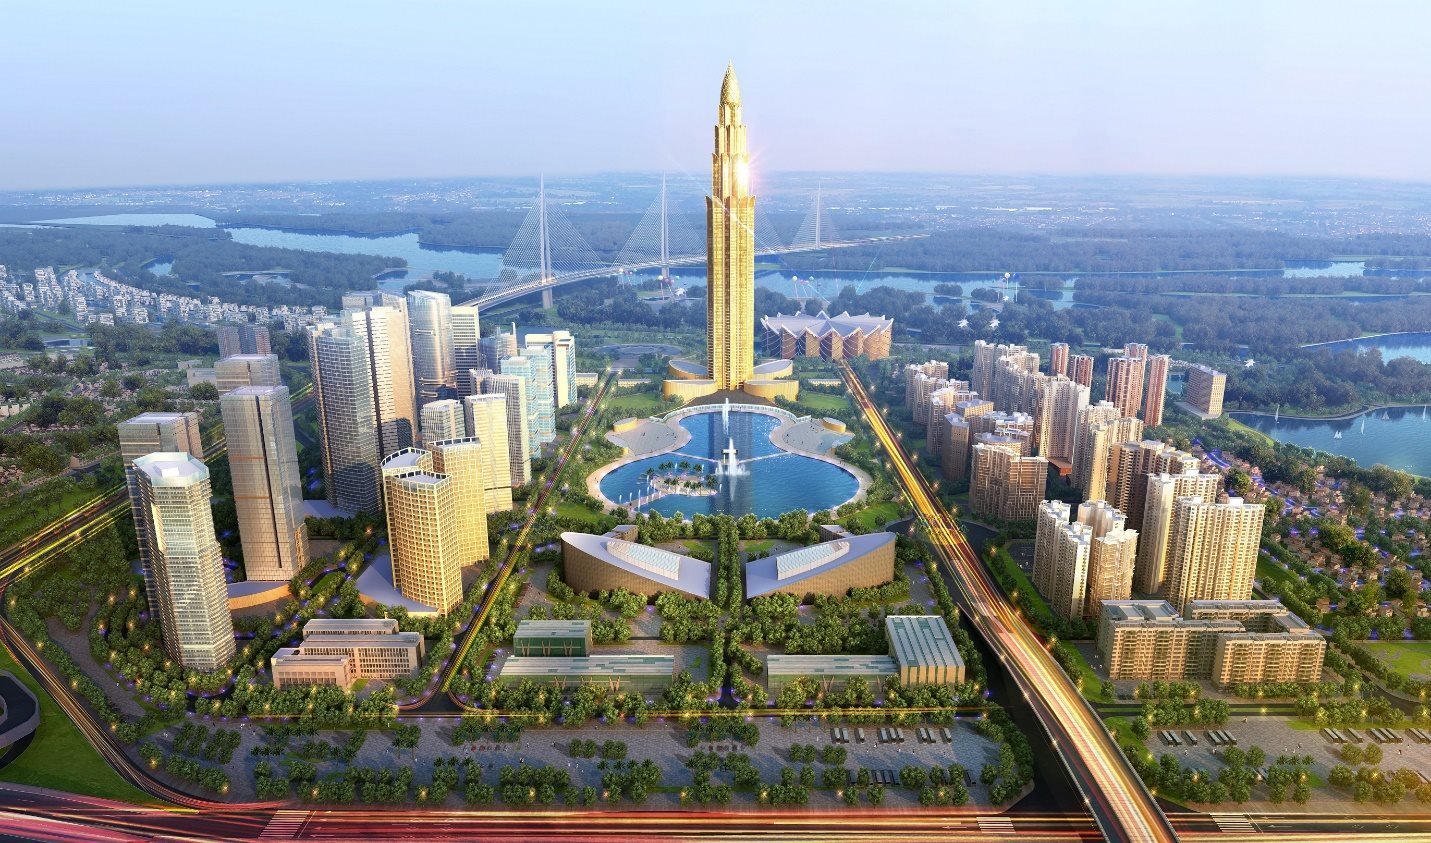 Hà Nội: Sắp khởi công xây dựng toà tháp cao 108 tầng tại Đông Anh